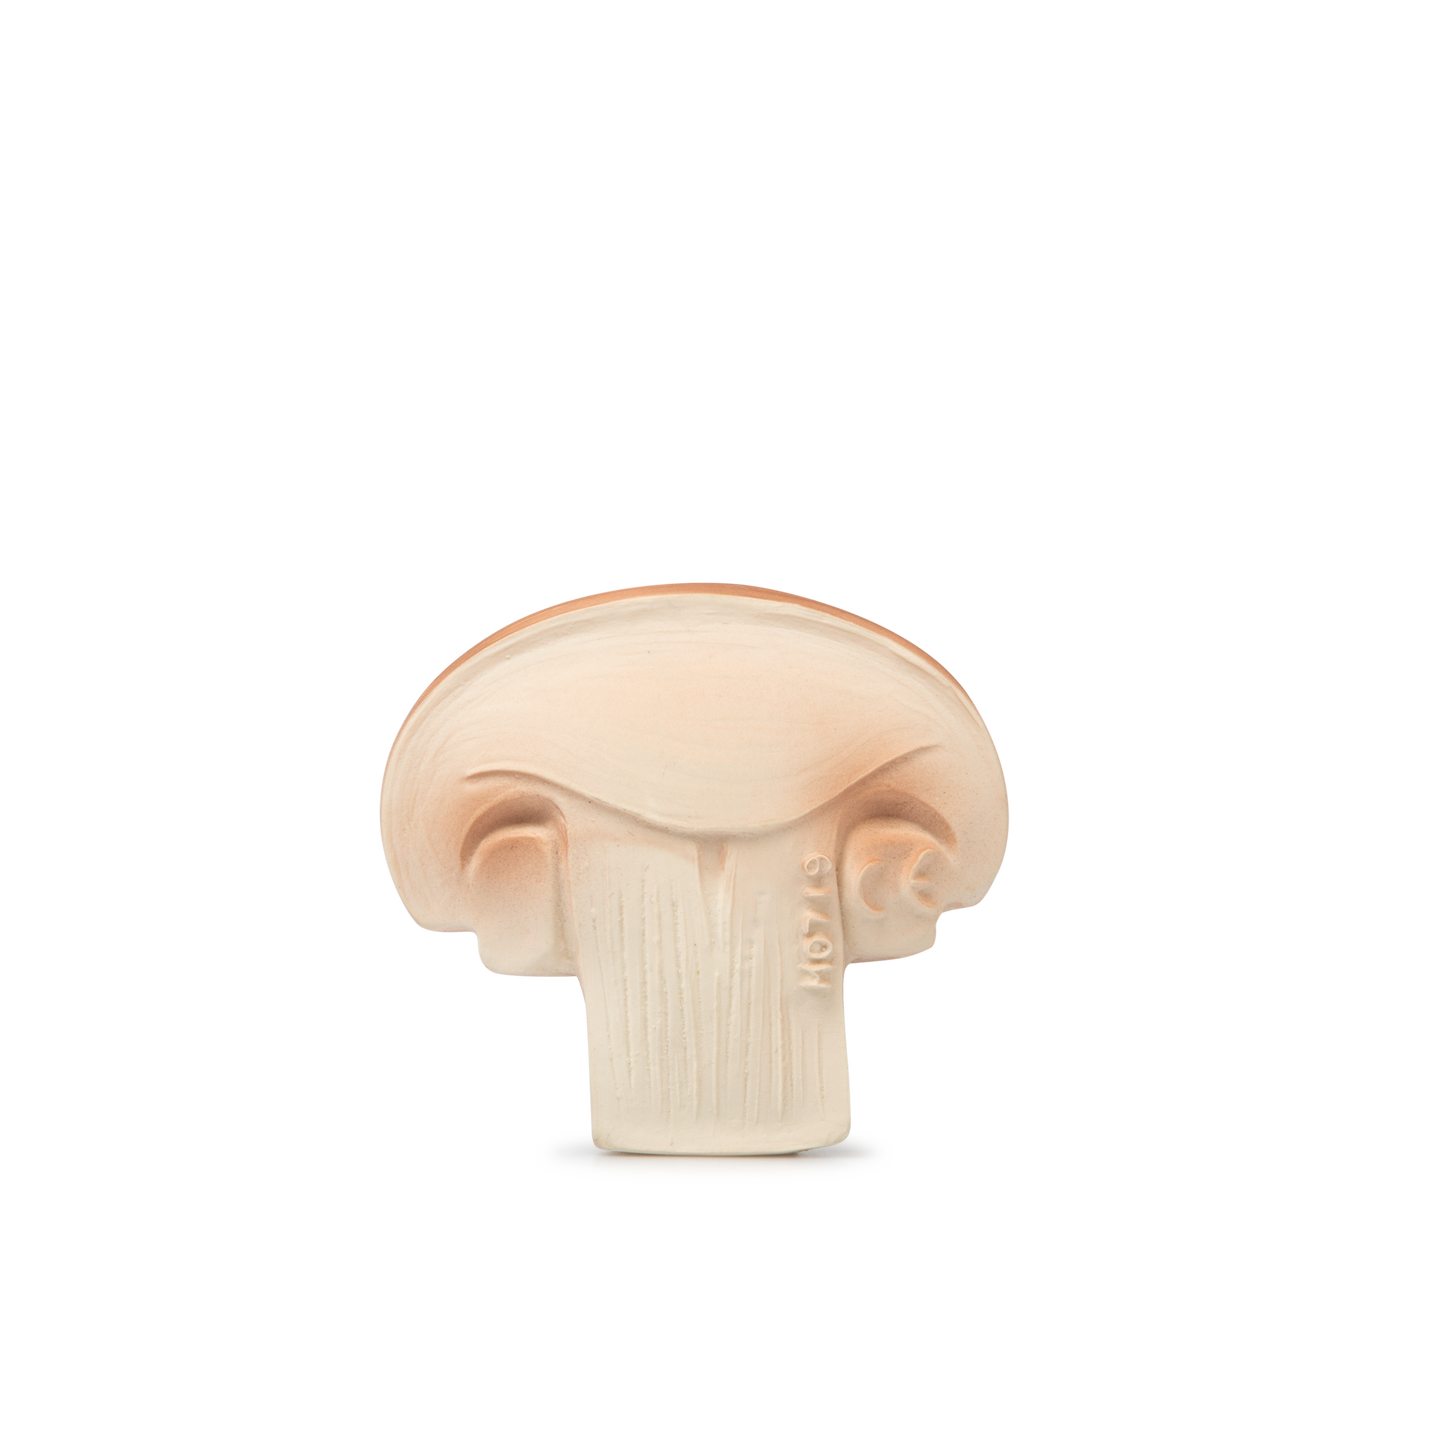 Manolo the Mushroom Teether